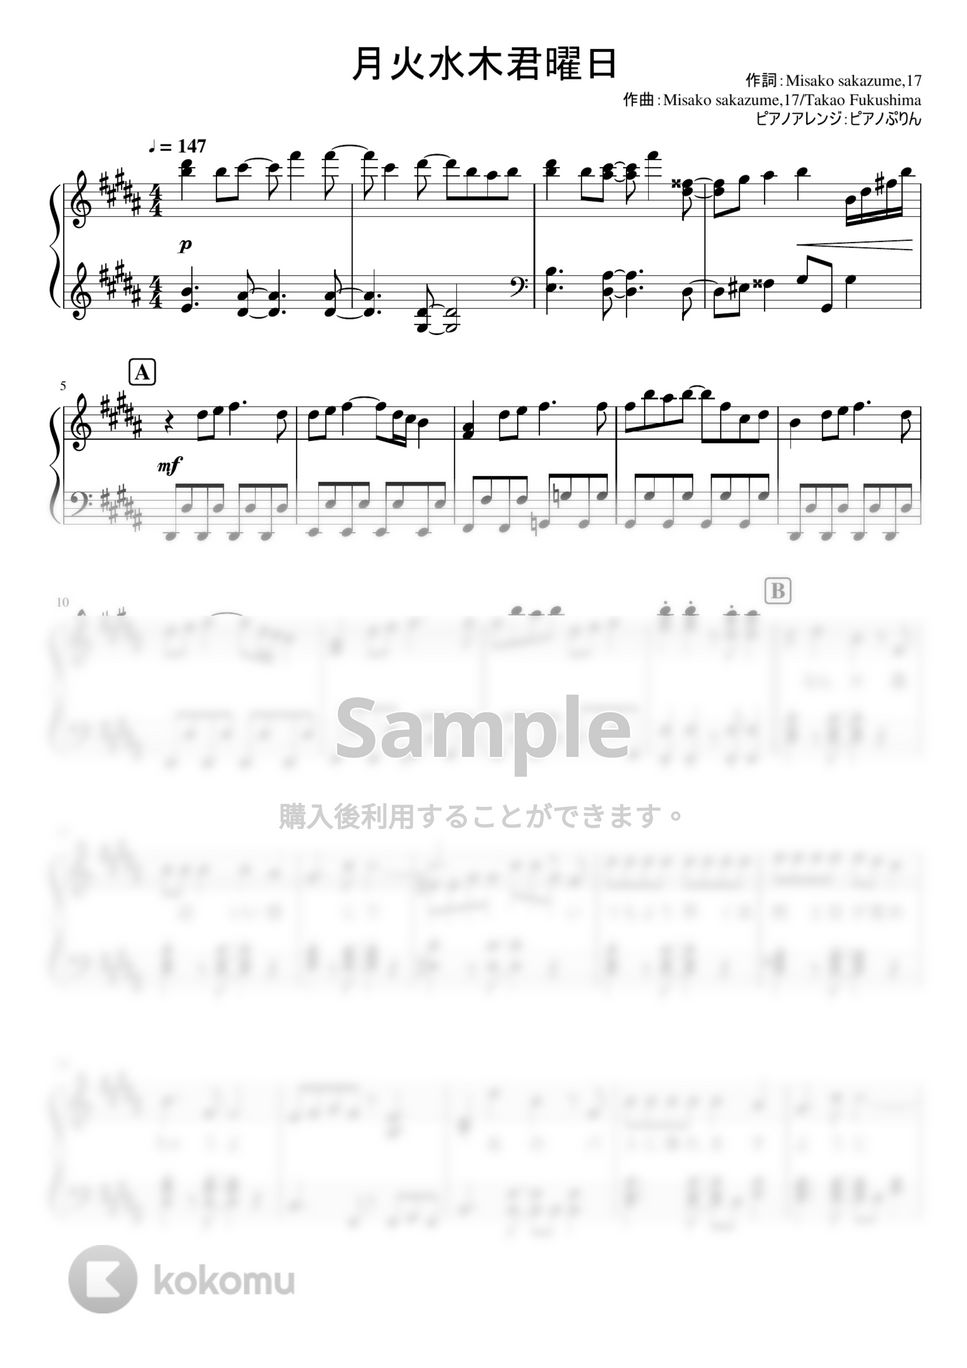 なにわ男子 - 月火水木君曜日 (1stアルバム「1st Love」収録曲。) by ピアノぷりん